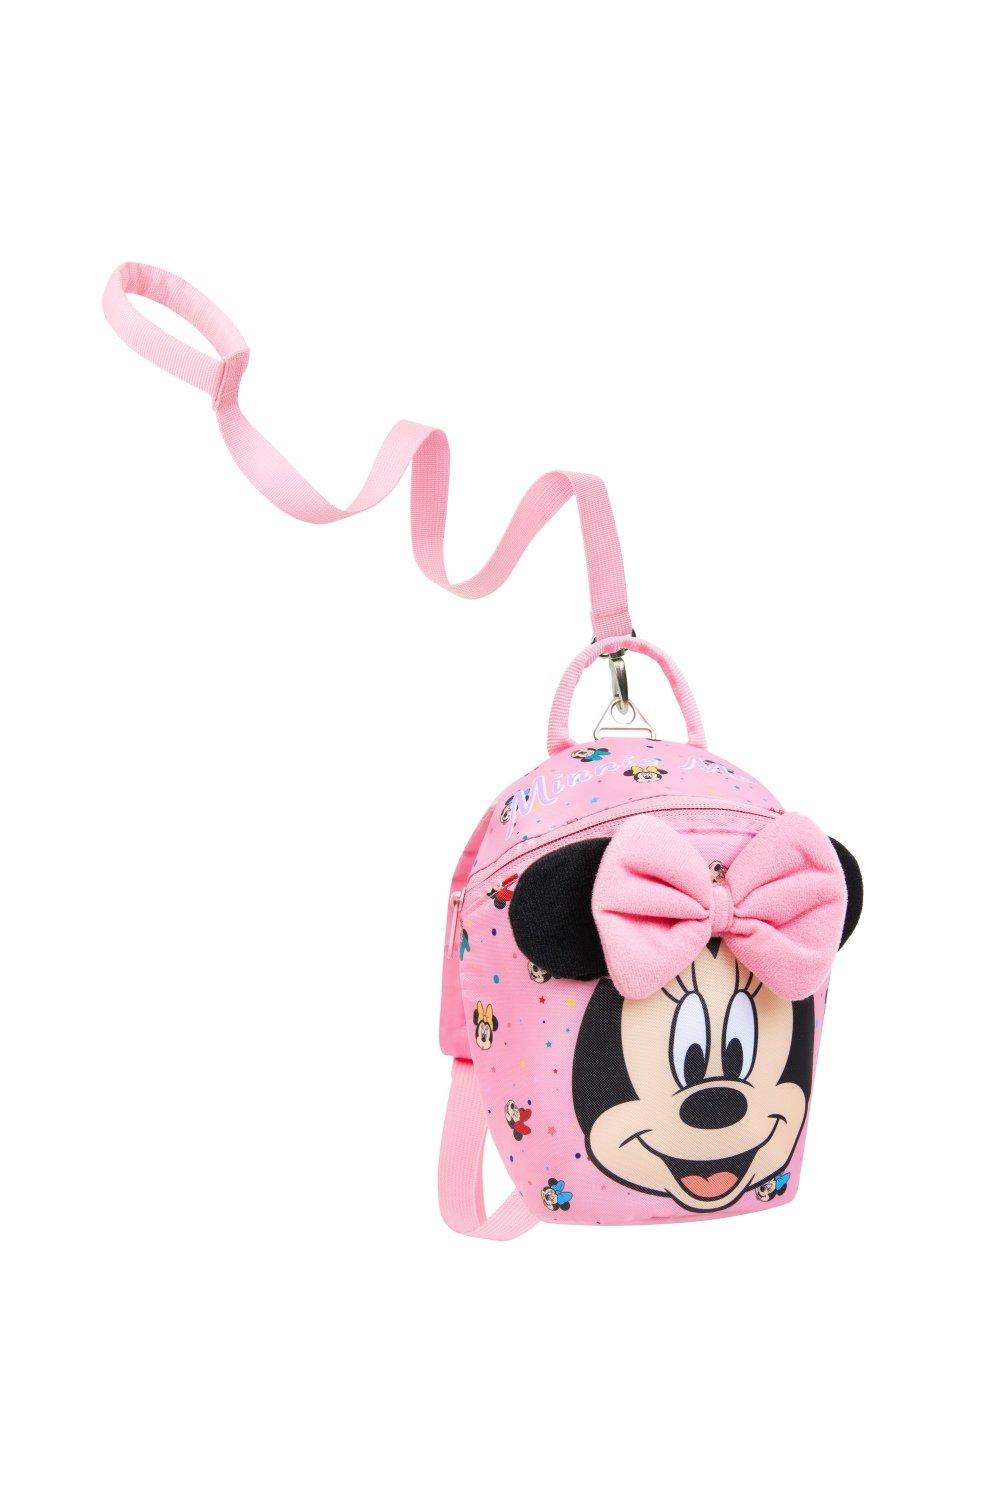 Рюкзак для малышей с поводьями Minnie, розовый рюкзак минни маус mickey mouse синий 4